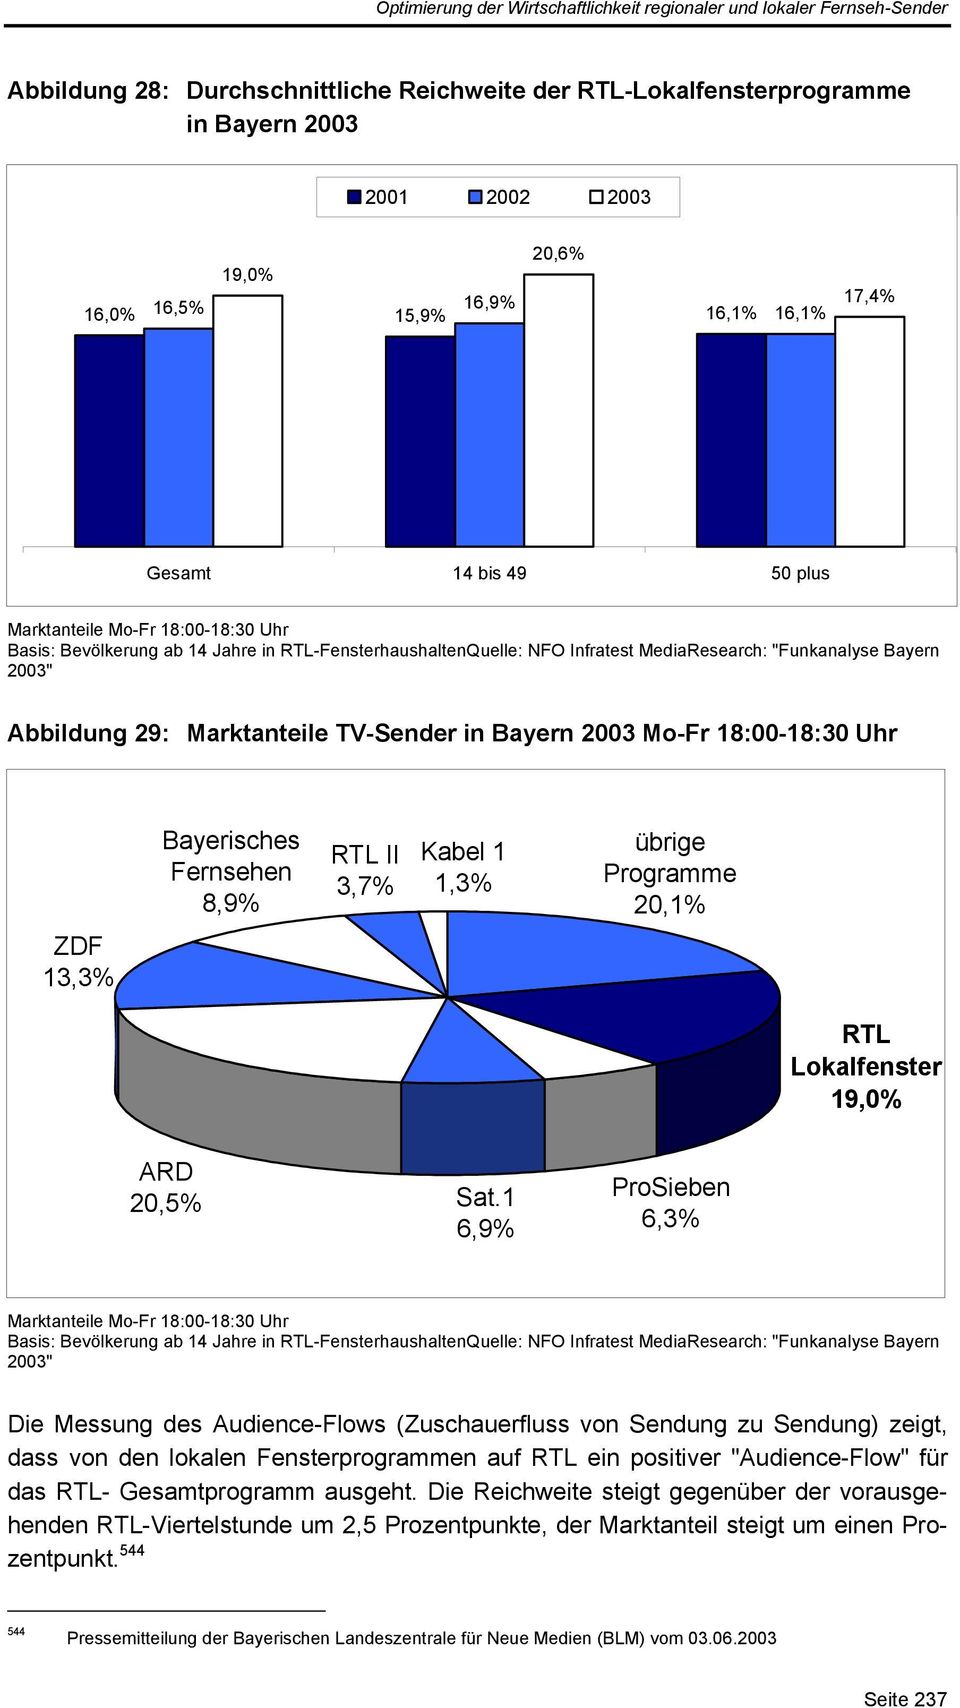 18:00-18:30 Uhr Bayerisches Fernsehen 8,9% RTL II 3,7% Kabel 1 1,3% übrige Programme 20,1% ZDF 13,3% RTL Lokalfenster 19,0% ARD 20,5% Sat.